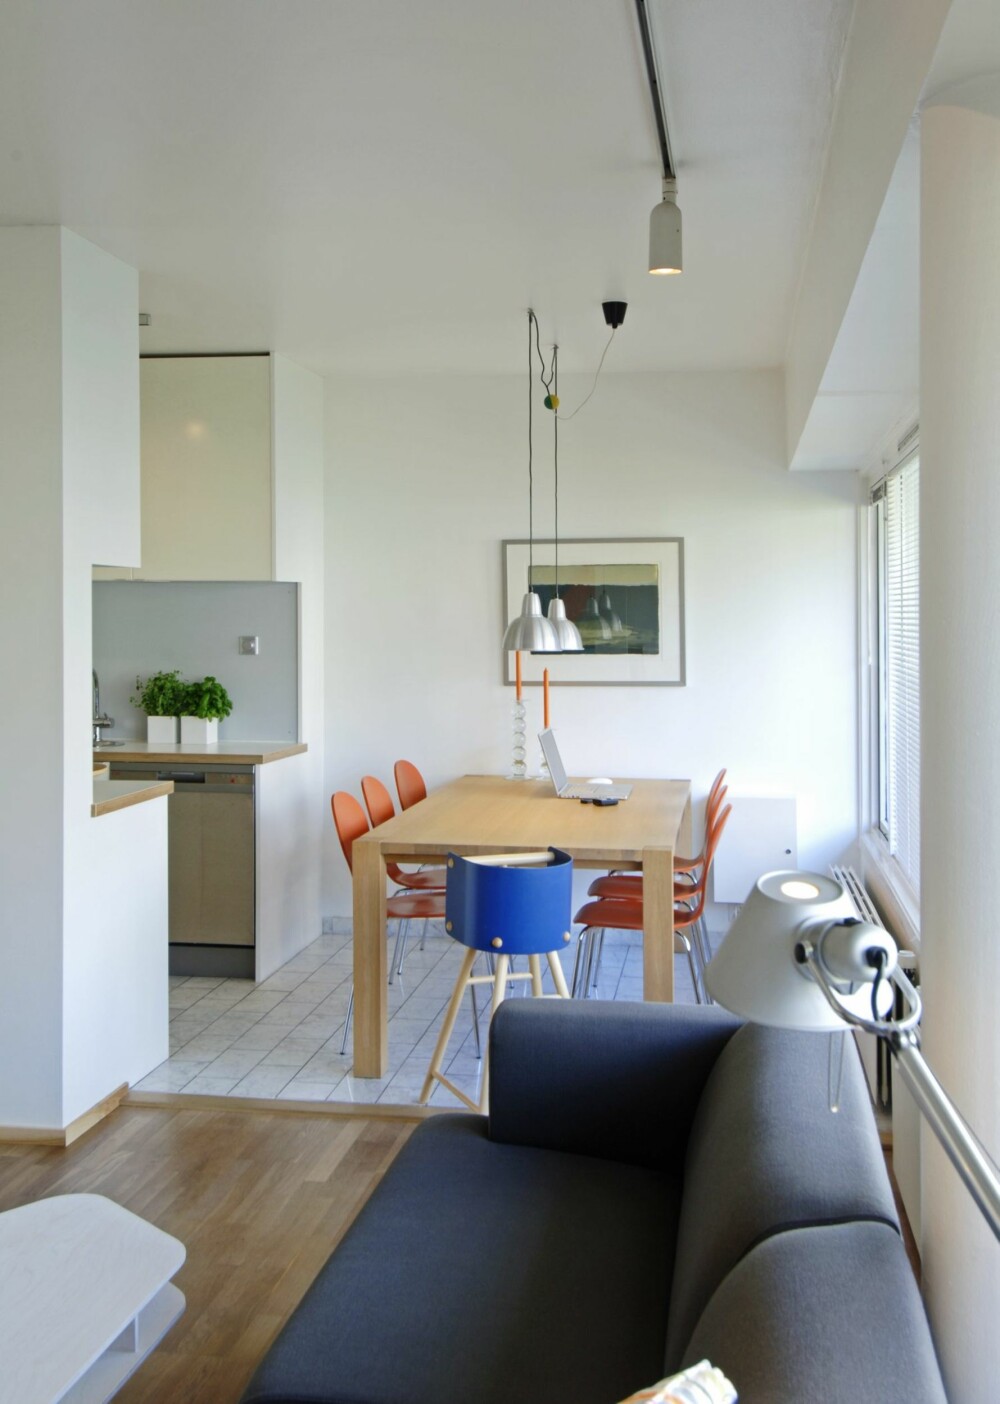 ÅPEN LØSNING: Spisestuen ligger praktisk til midt mellom stue og kjøkken. Den blå barnestolen er Arteks 616 designet av Ben af Schulten i 1965.